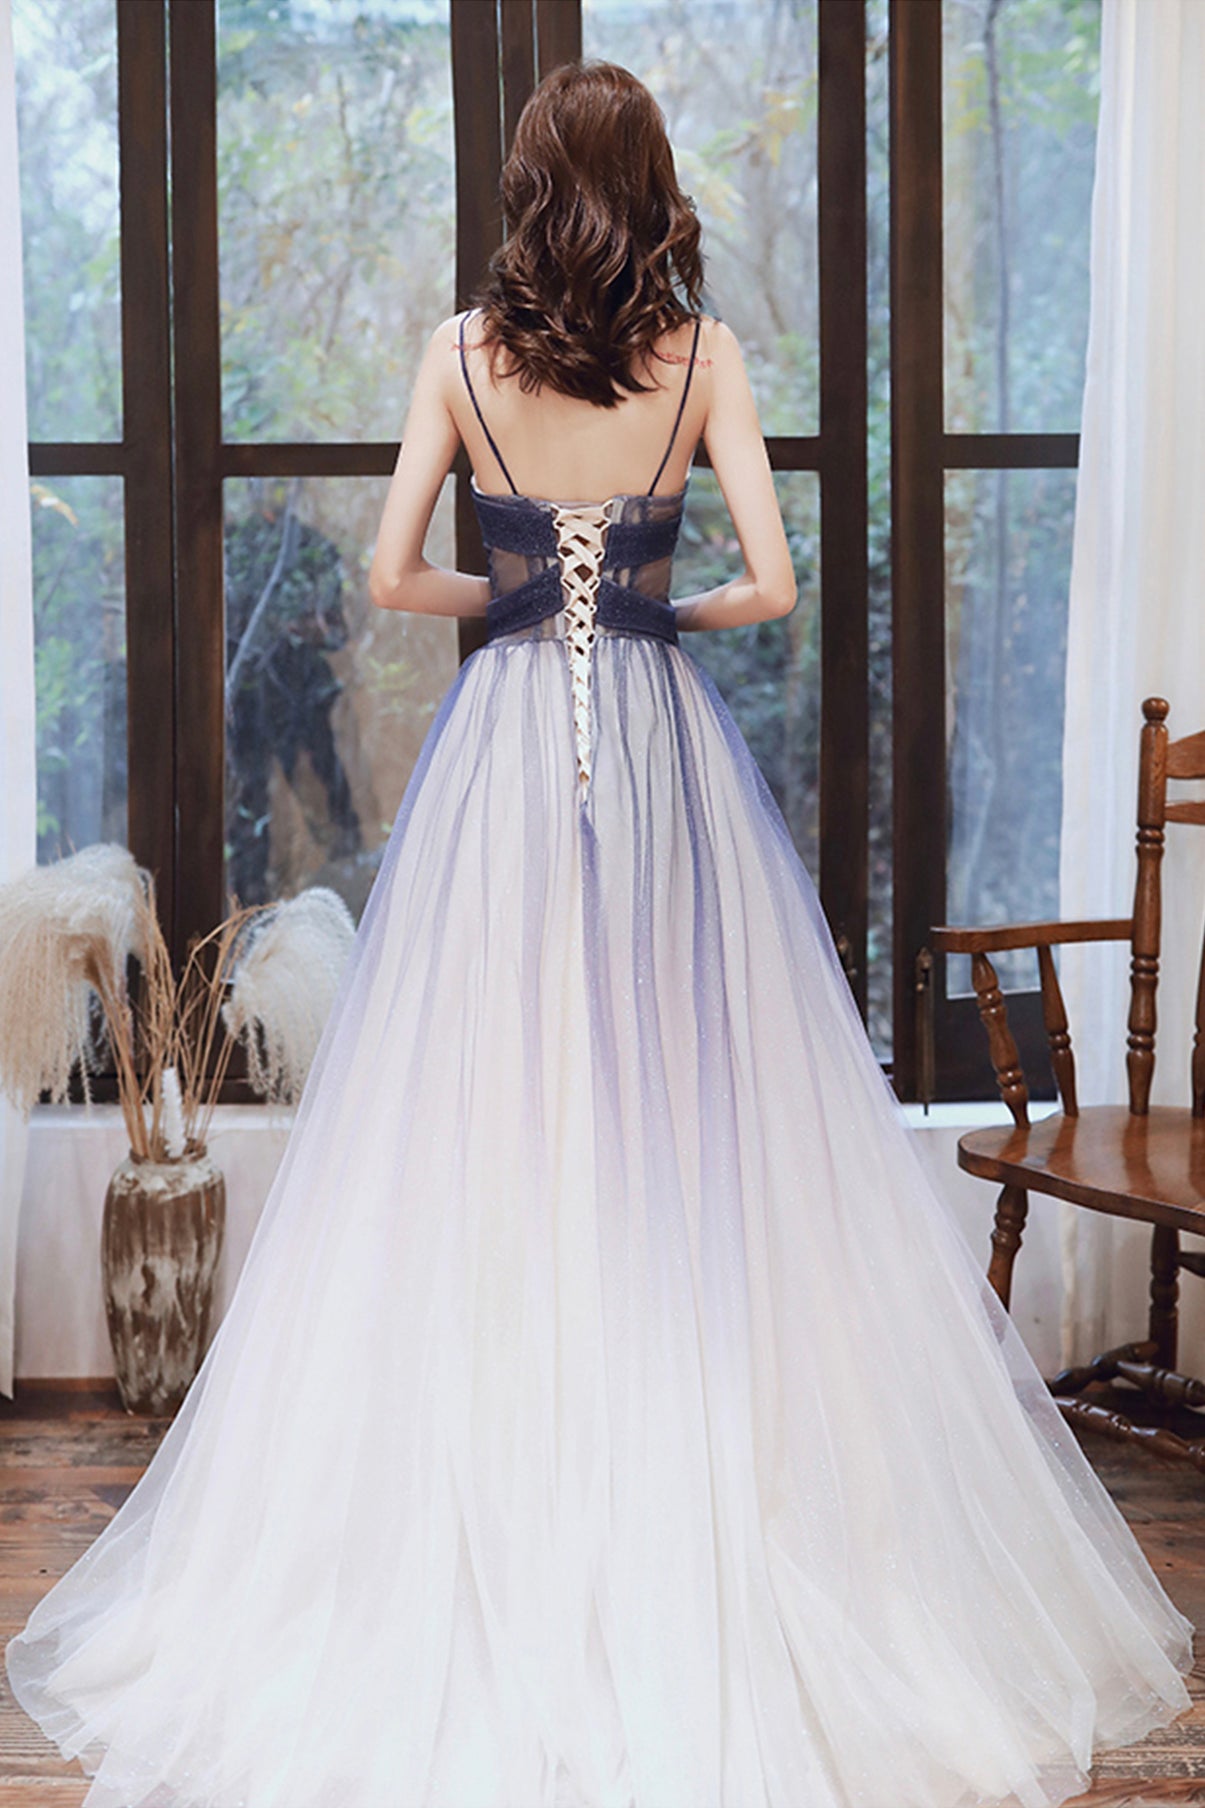 Stylish v neck tulle long A line prom dress blue evening dress  8725